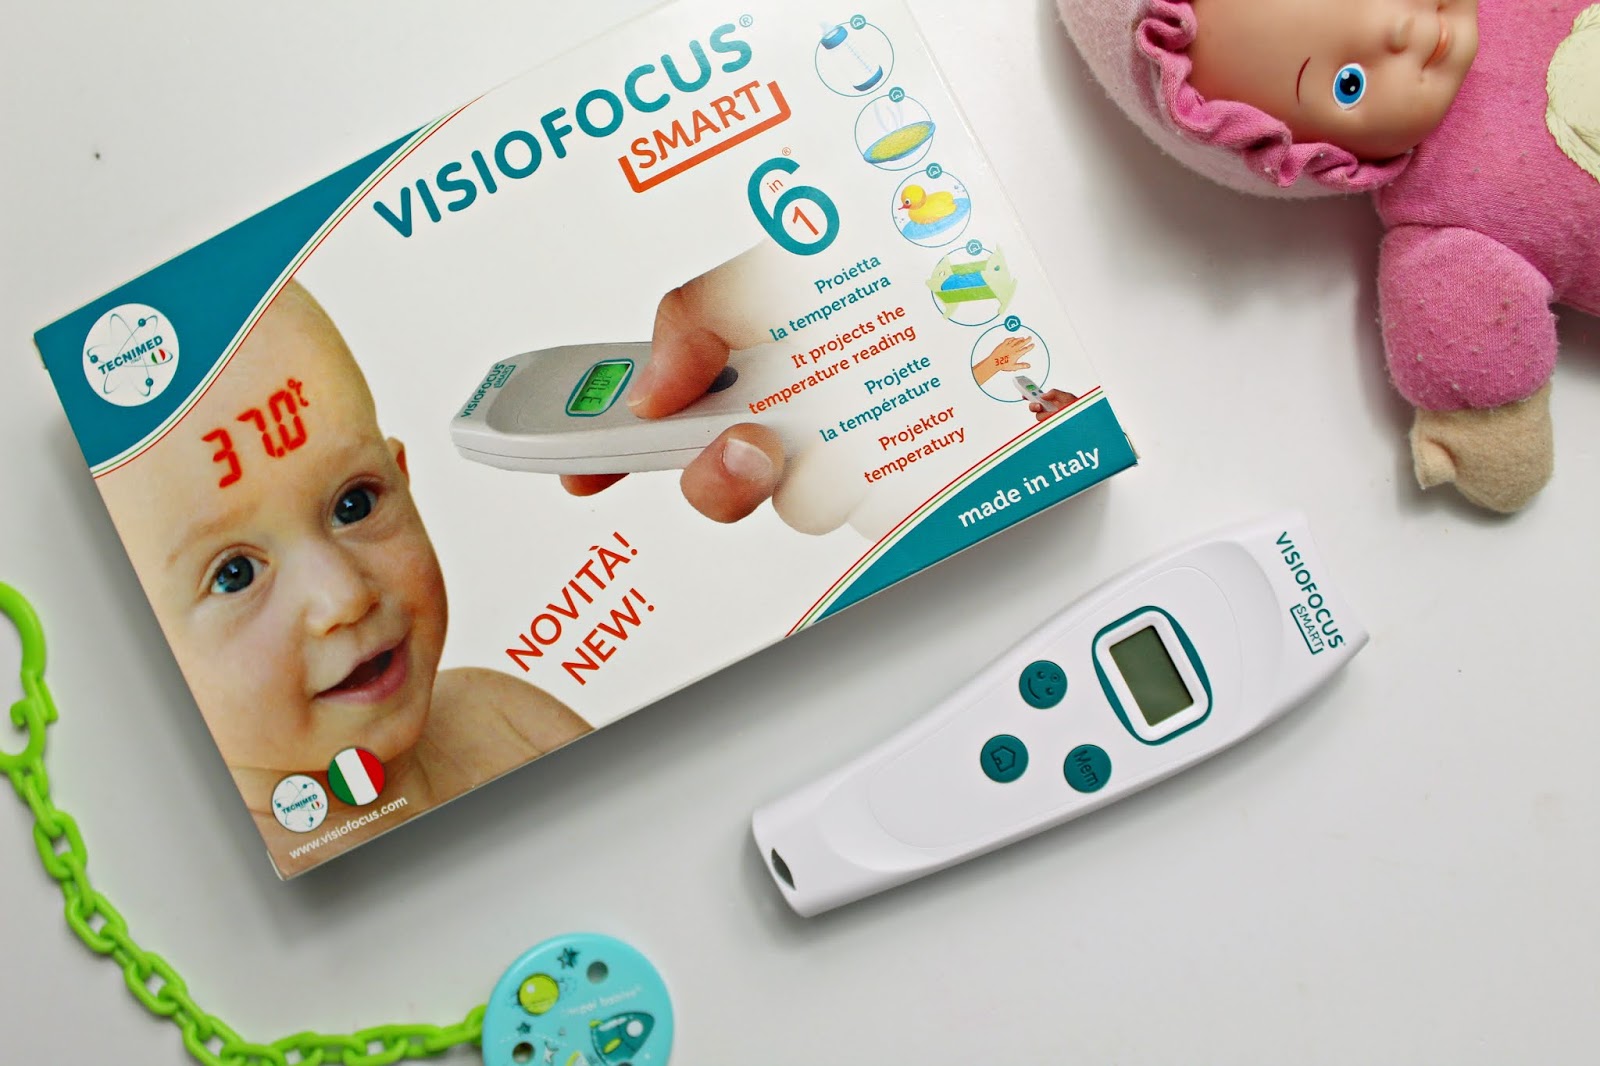 Visiofocus smart - dobry termometr dla dziecka, niemowlaka i dorosłego